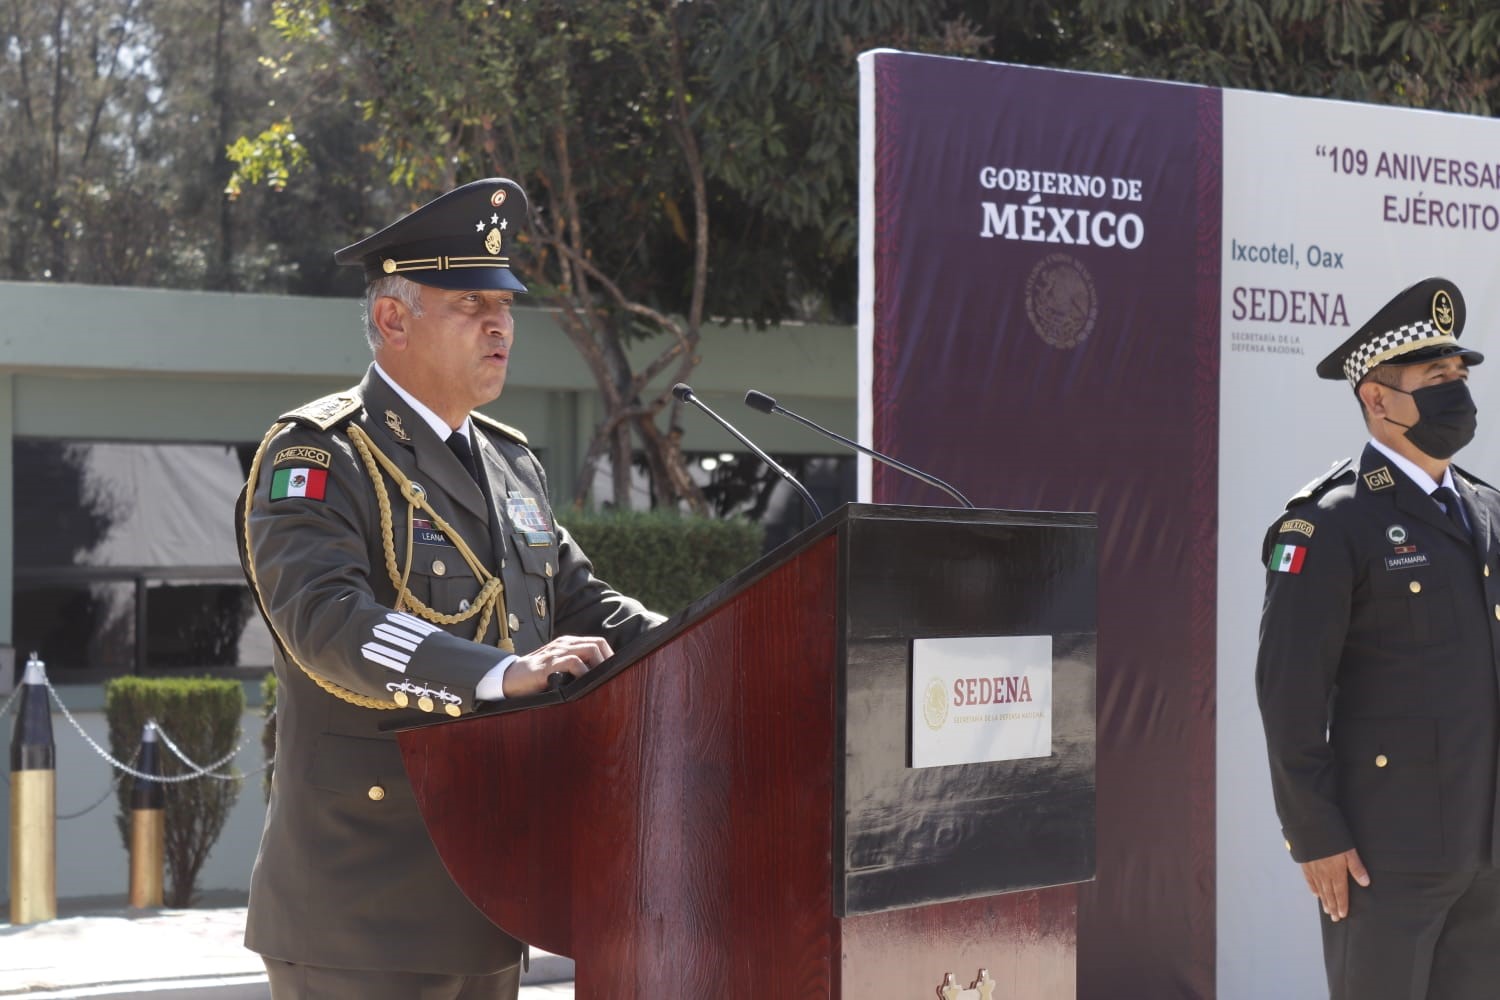 Ejército Mexicano, garante de la paz y seguridad nacional